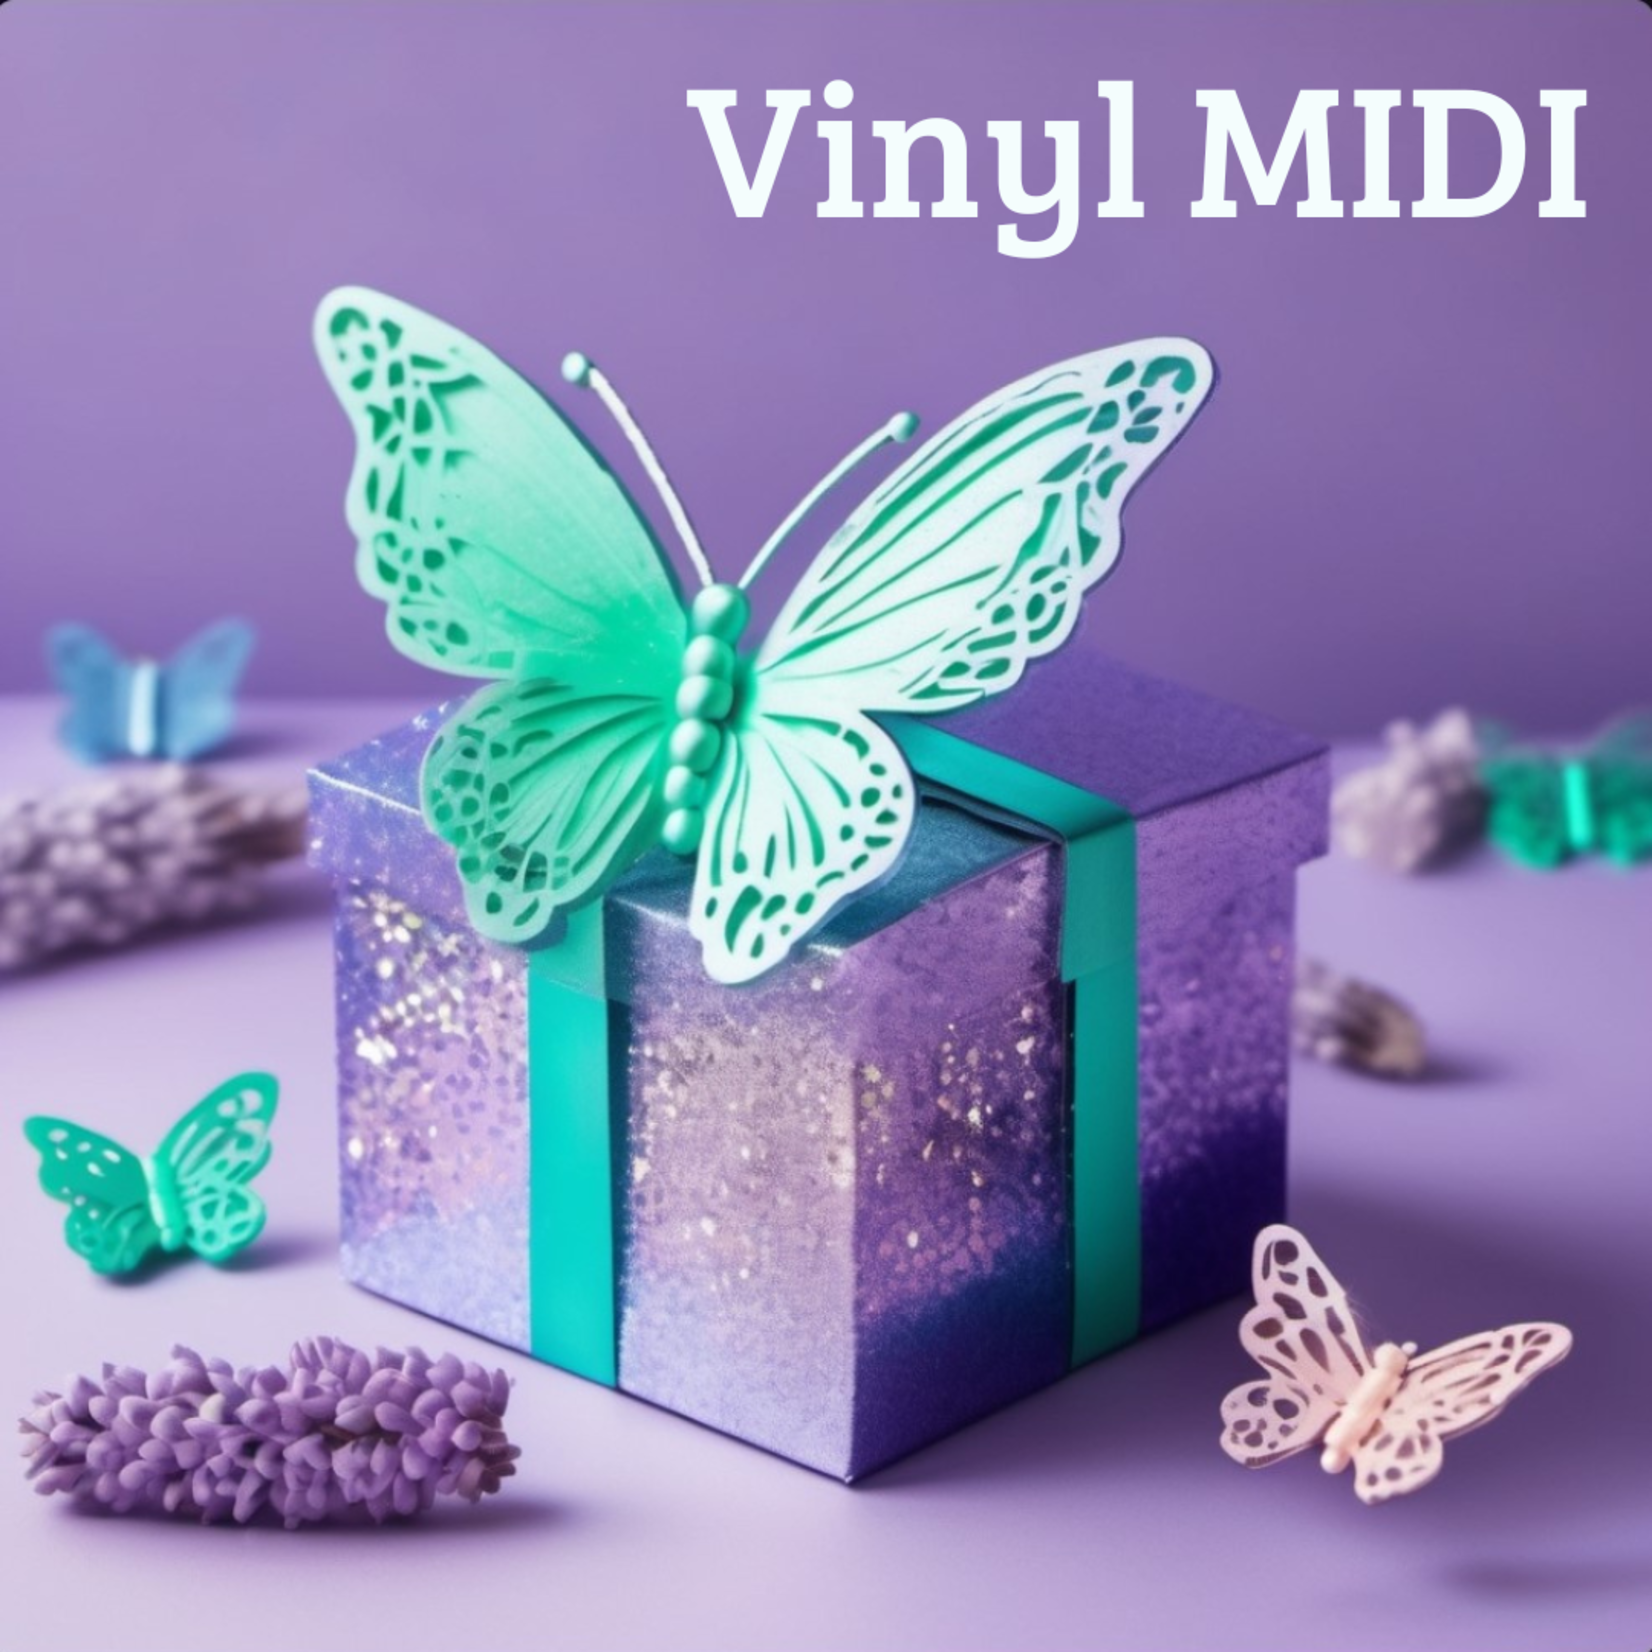 Mystery box vinyl (MIDI)